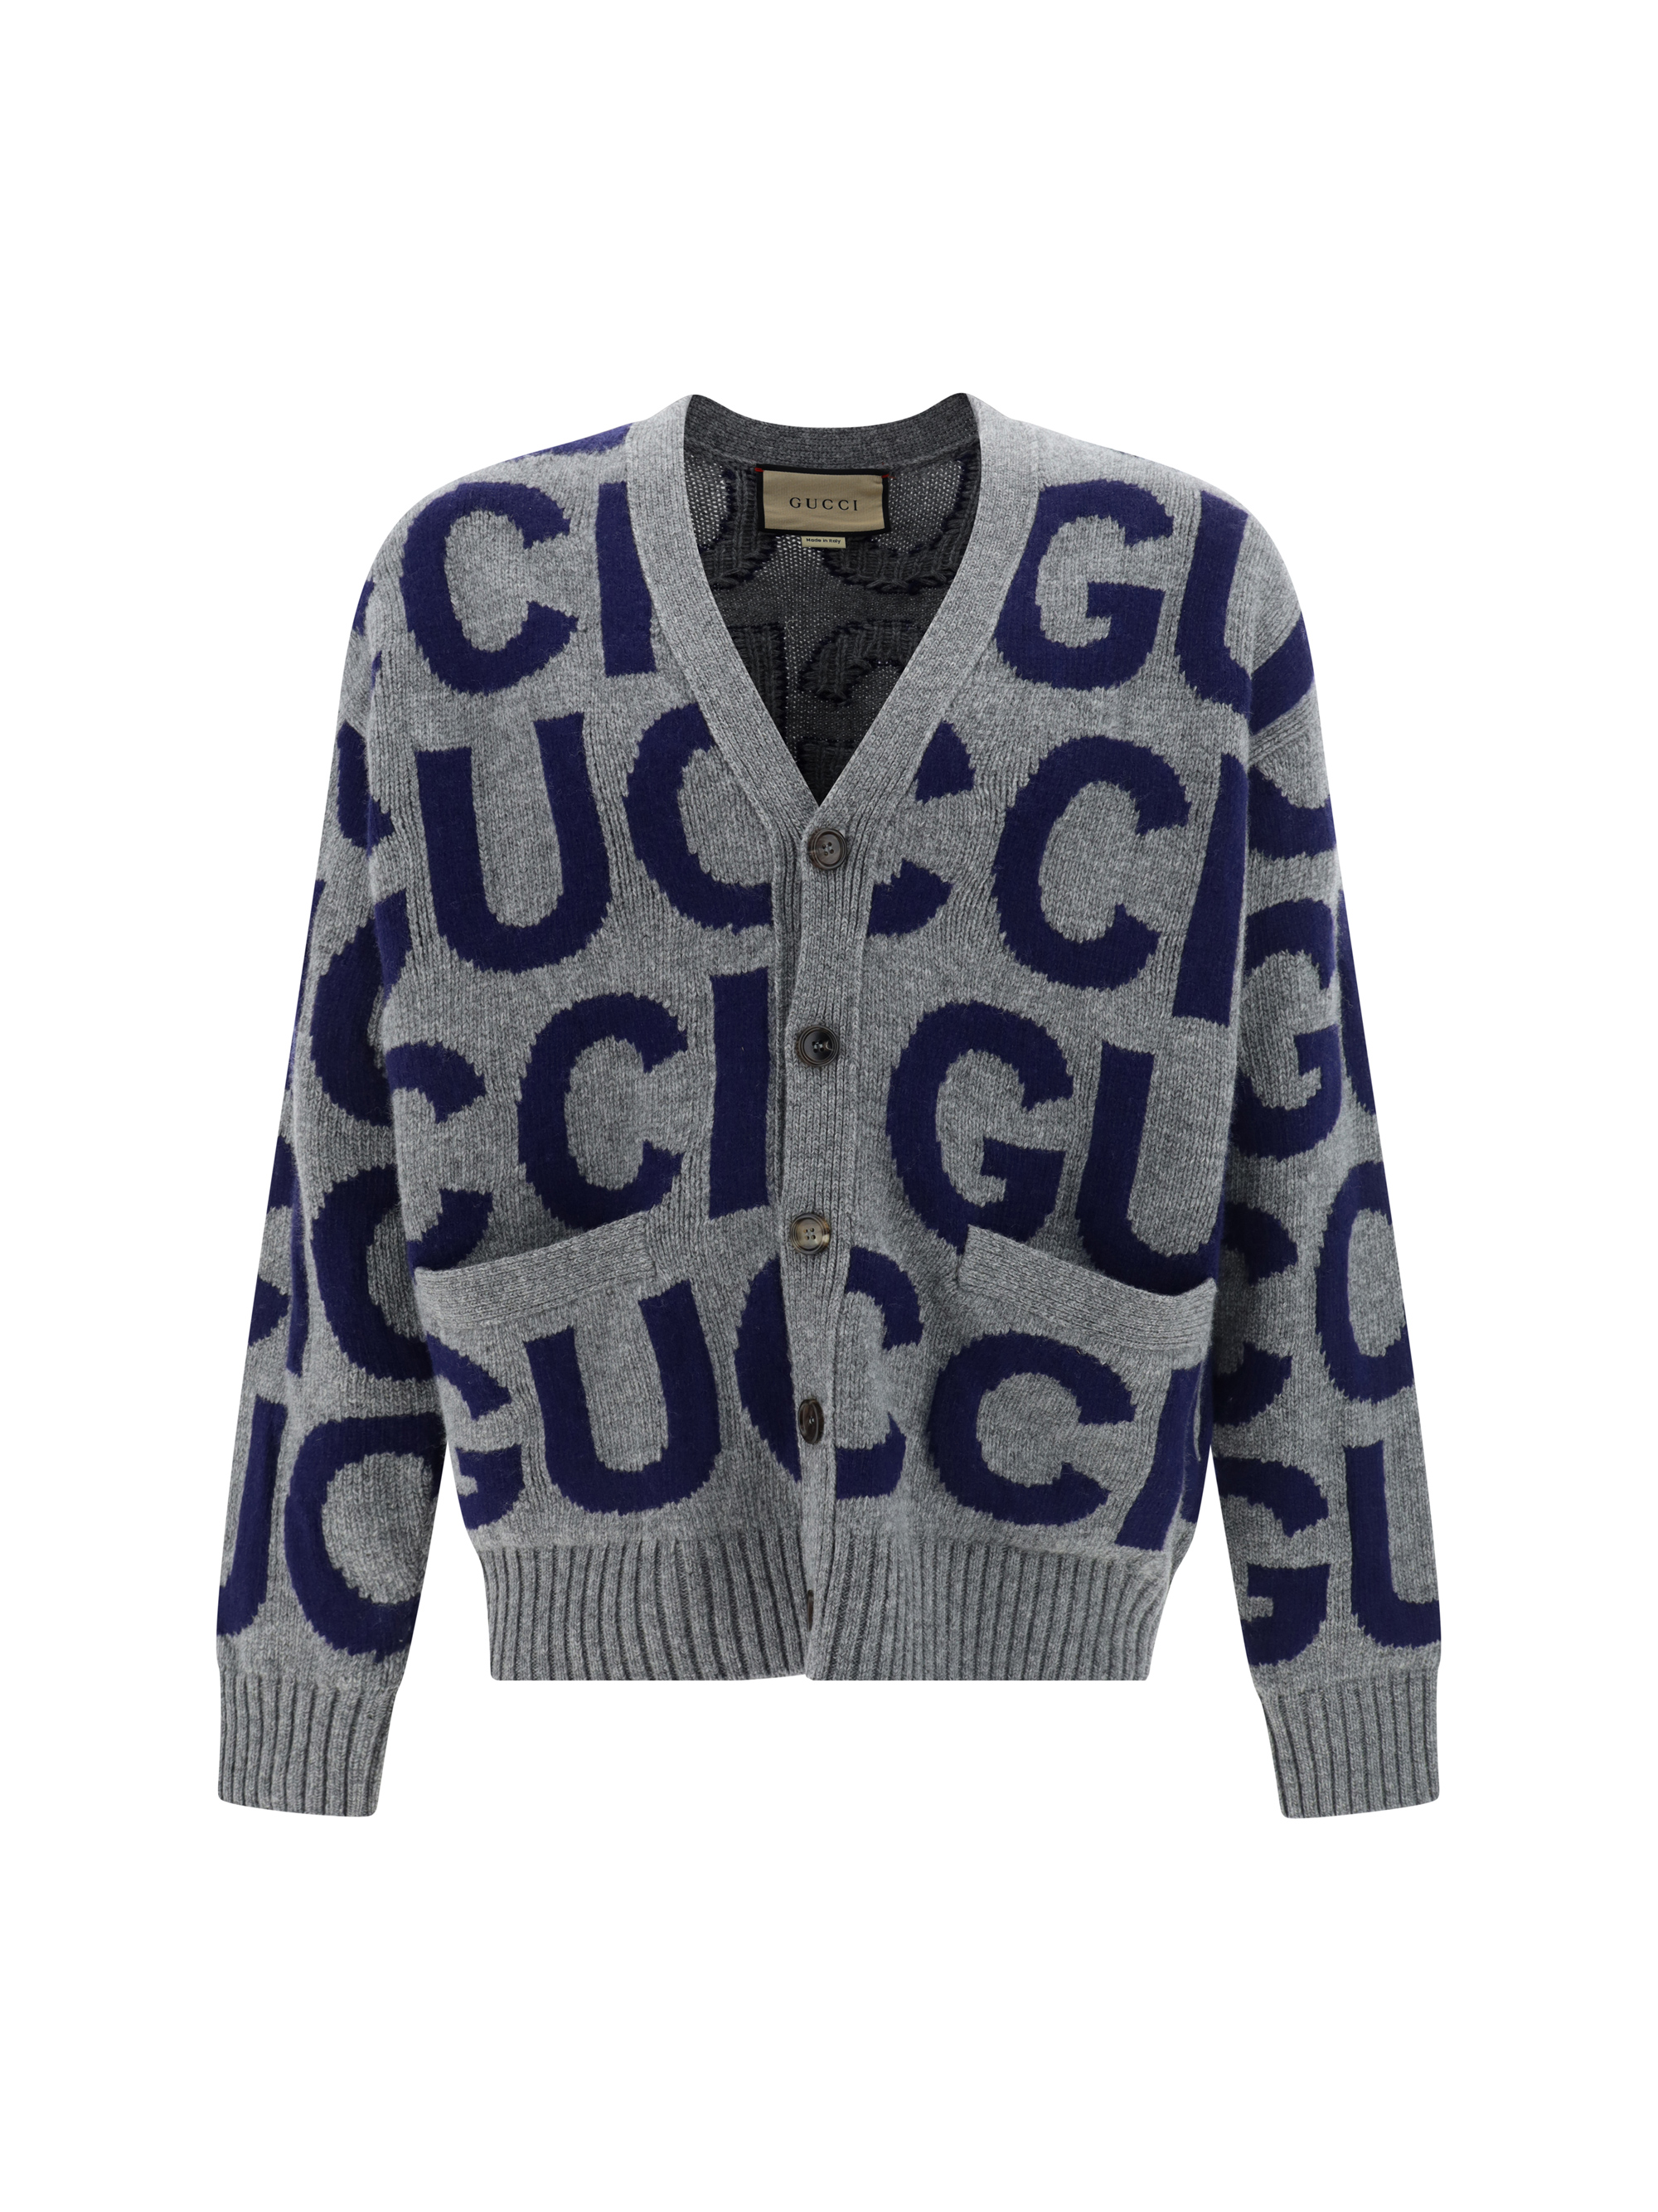 Gucci Cardigan In Grey/blue